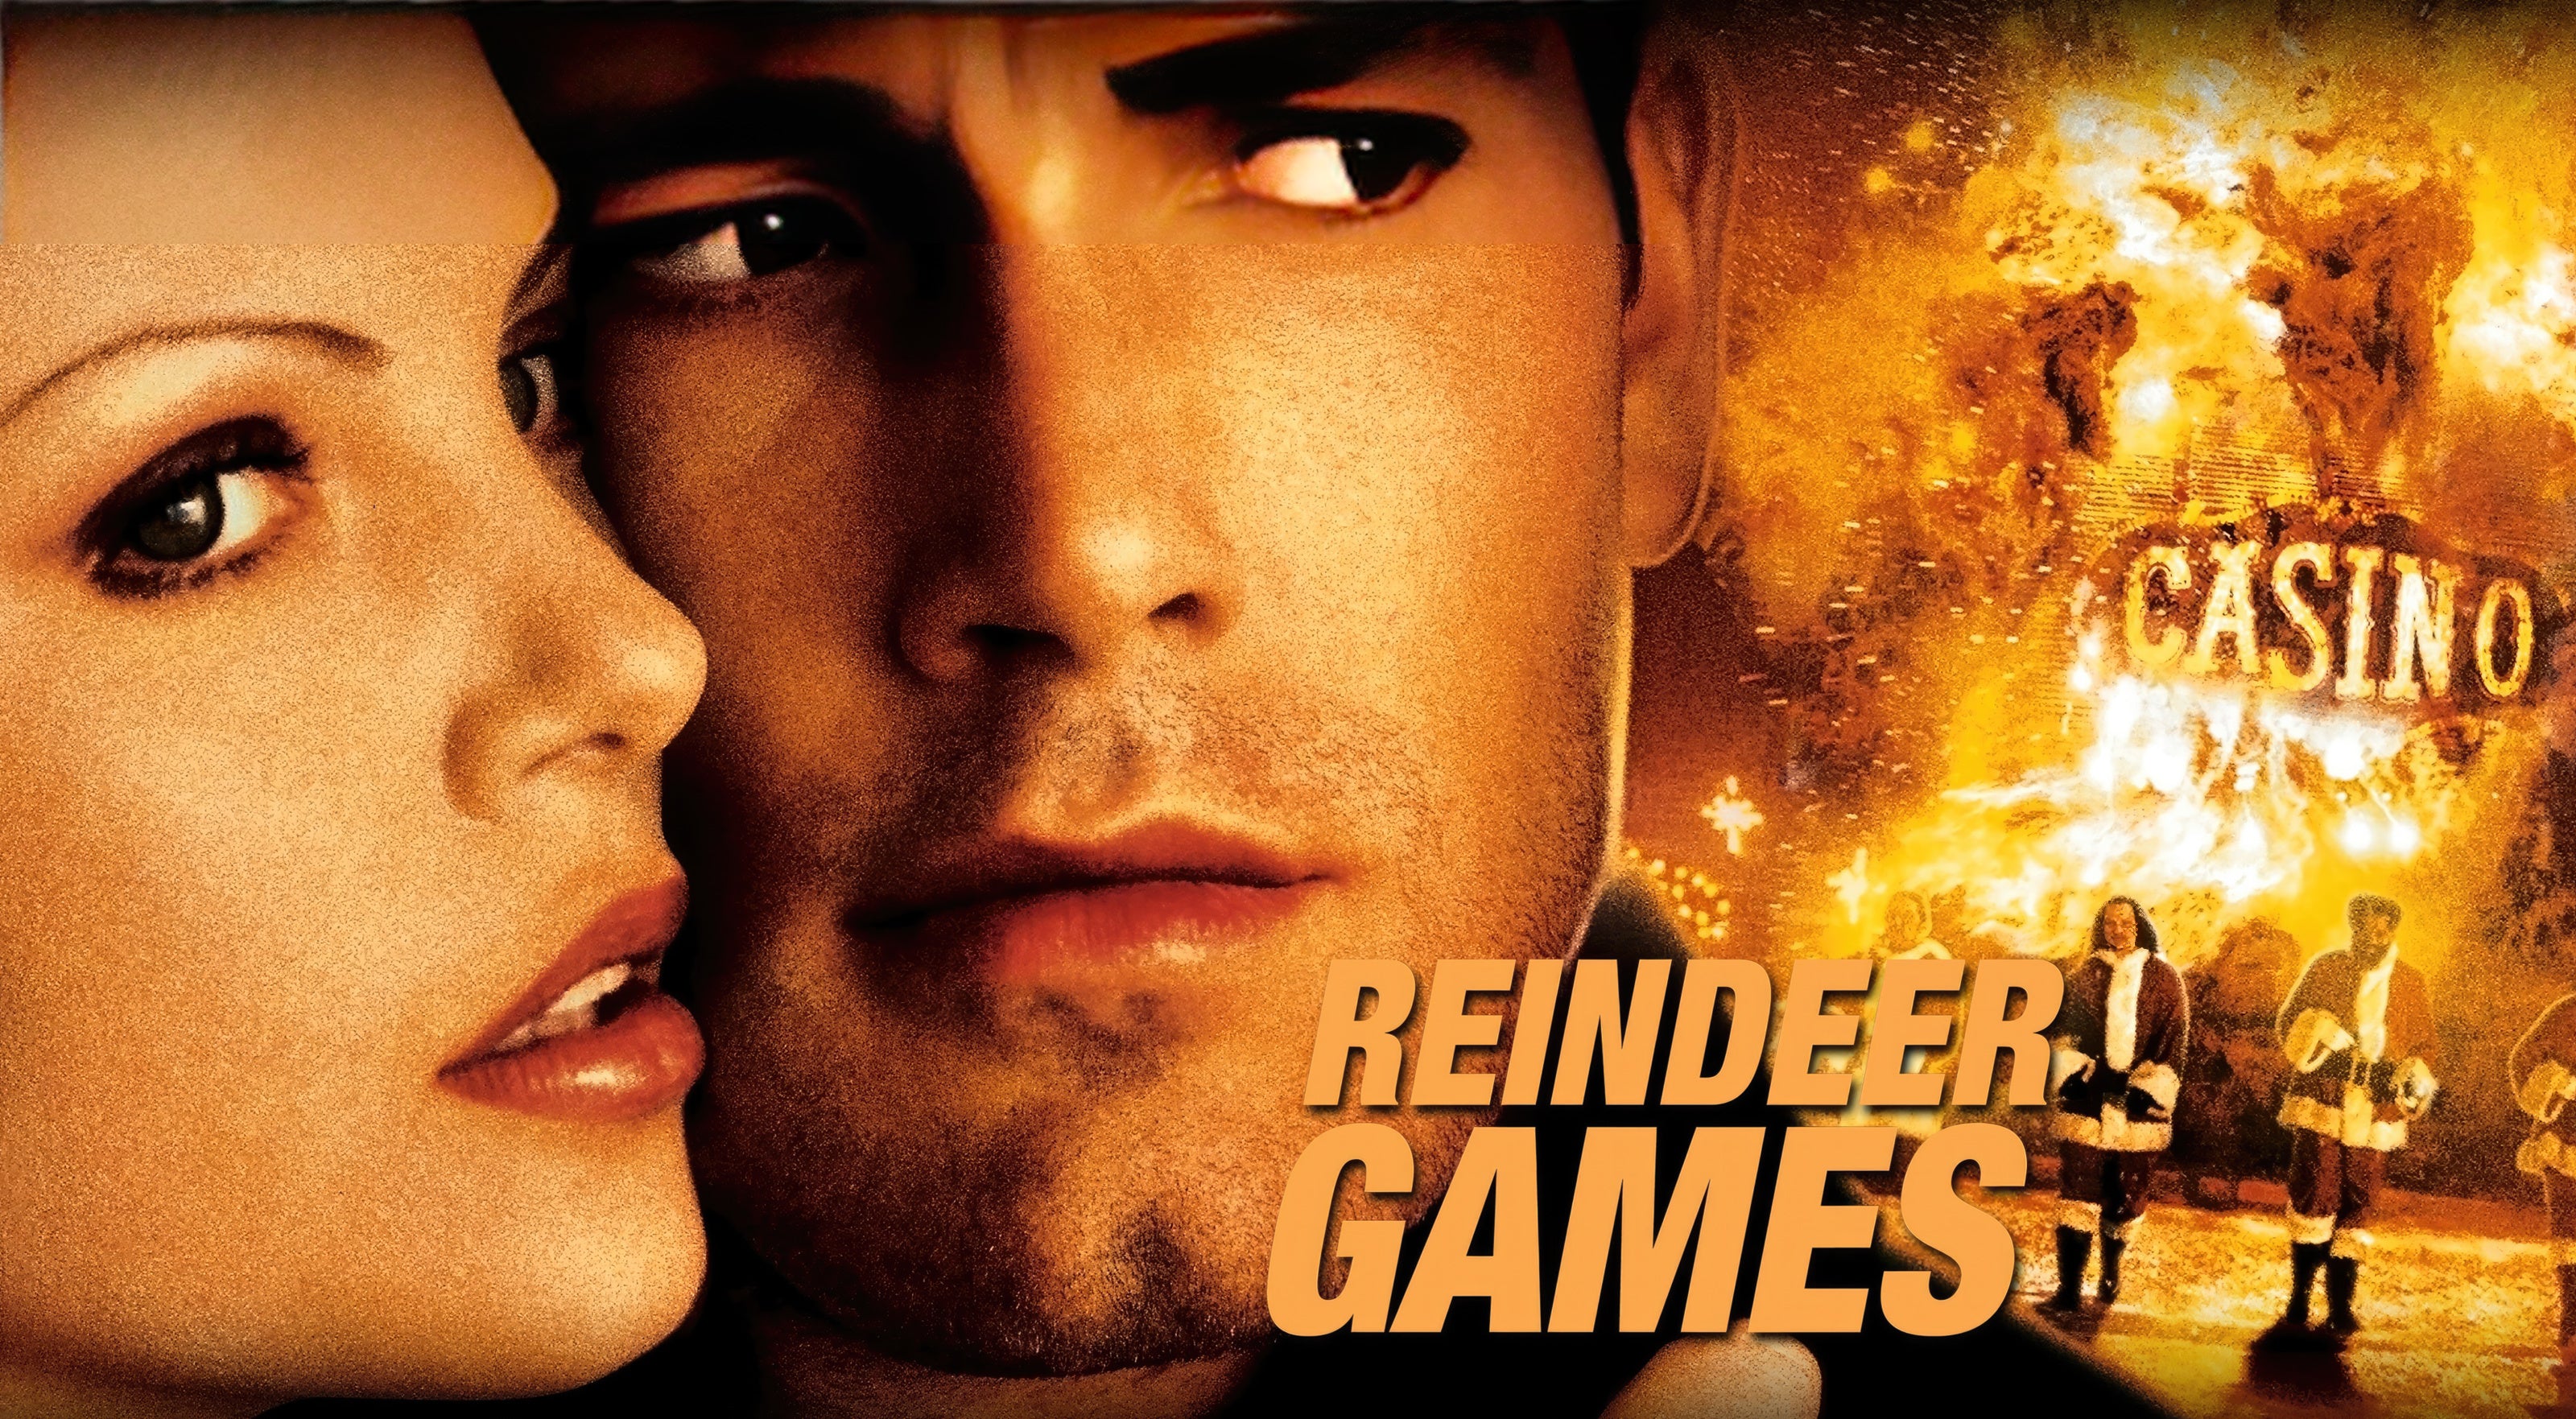 Reindeer Games Script Screenplay - Image of Movie Film Poster